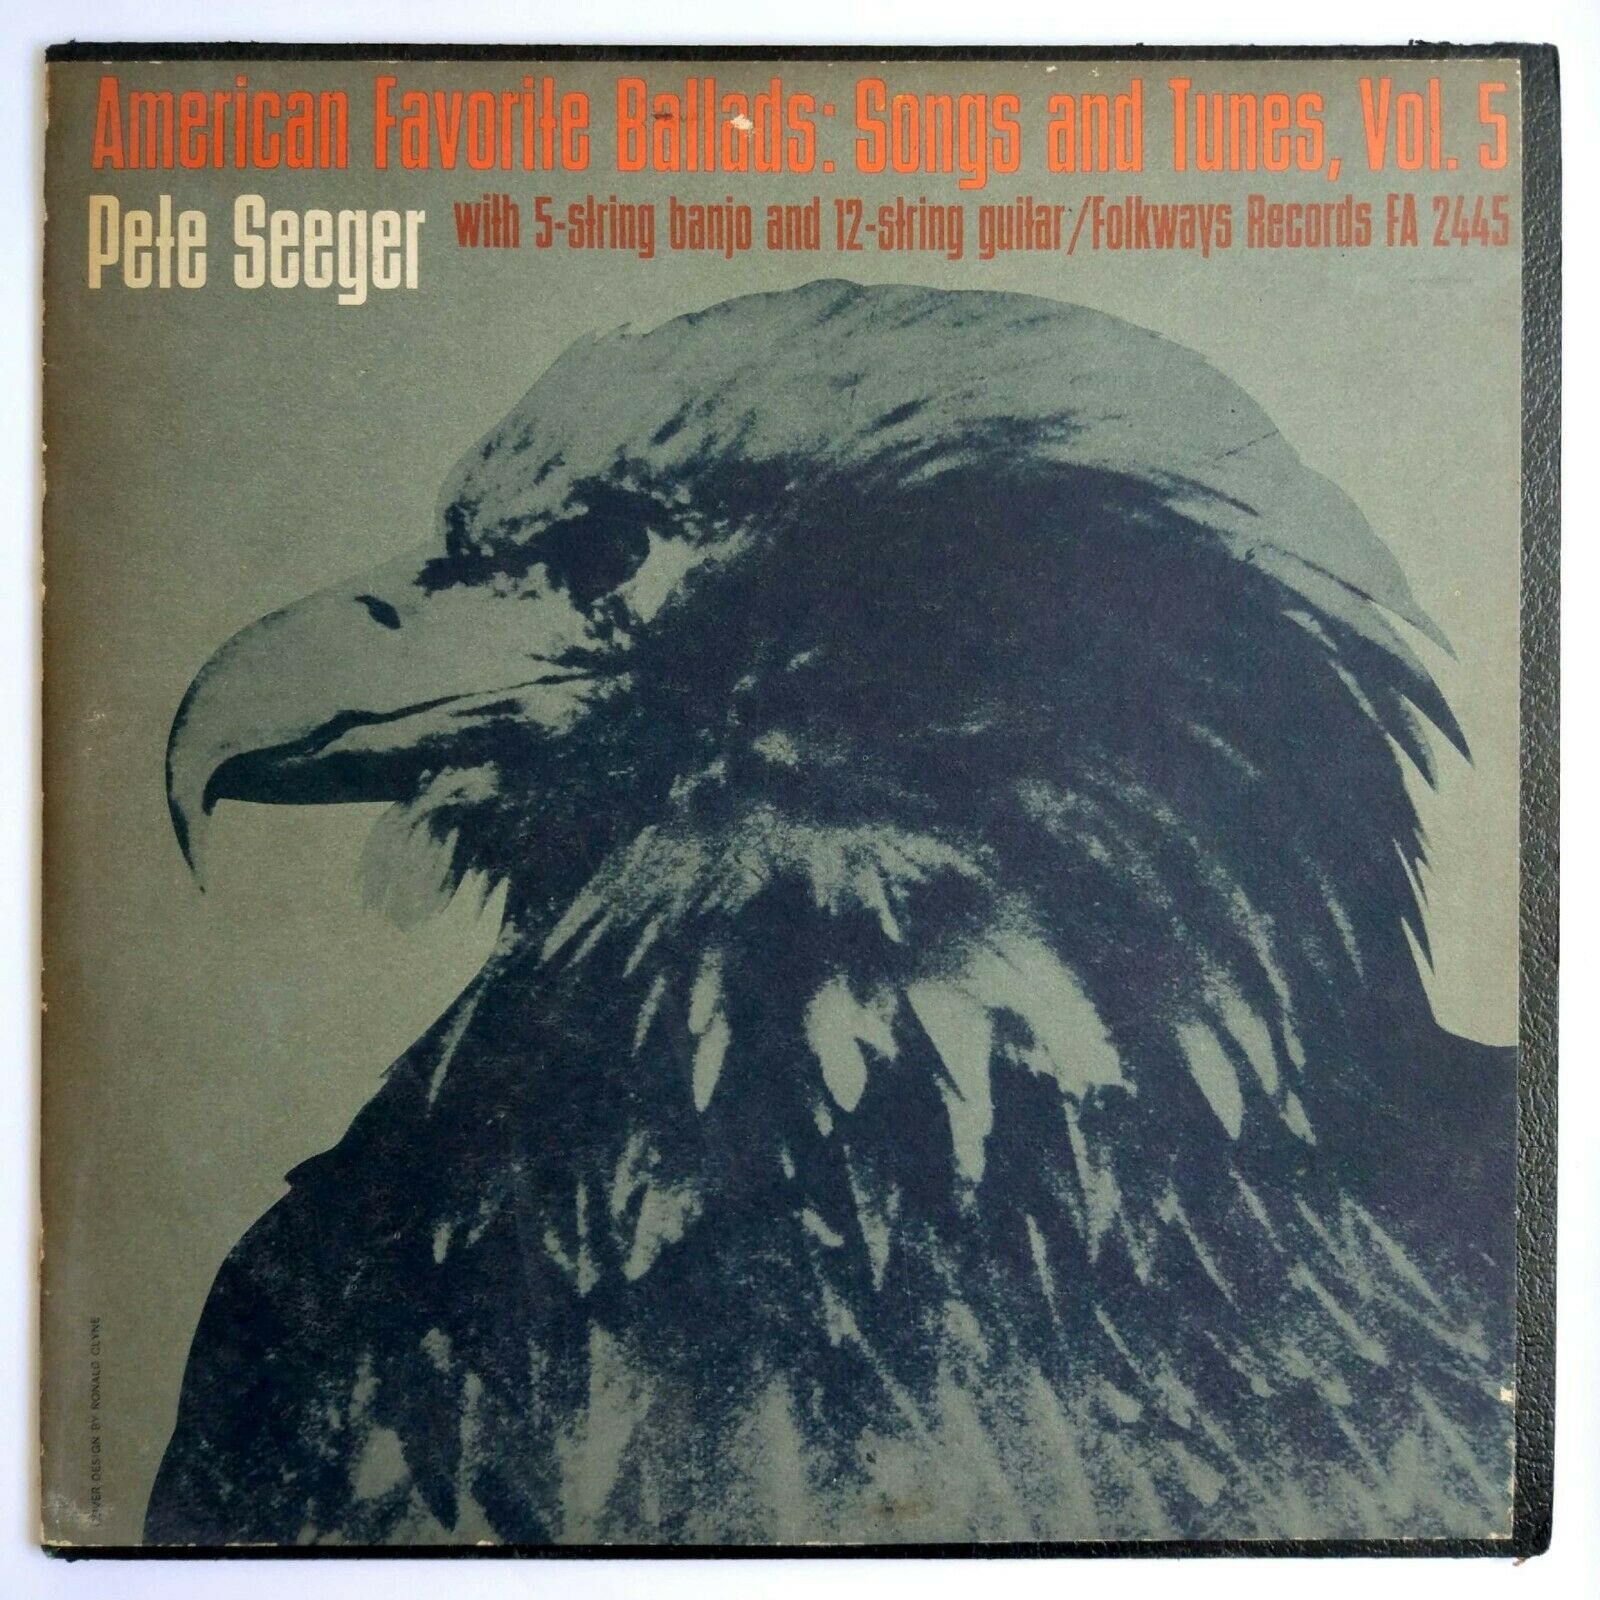 Pete Seeger – American Favorite Ballads: Songs And Tunes Vol. 5 LP Folkways 1962